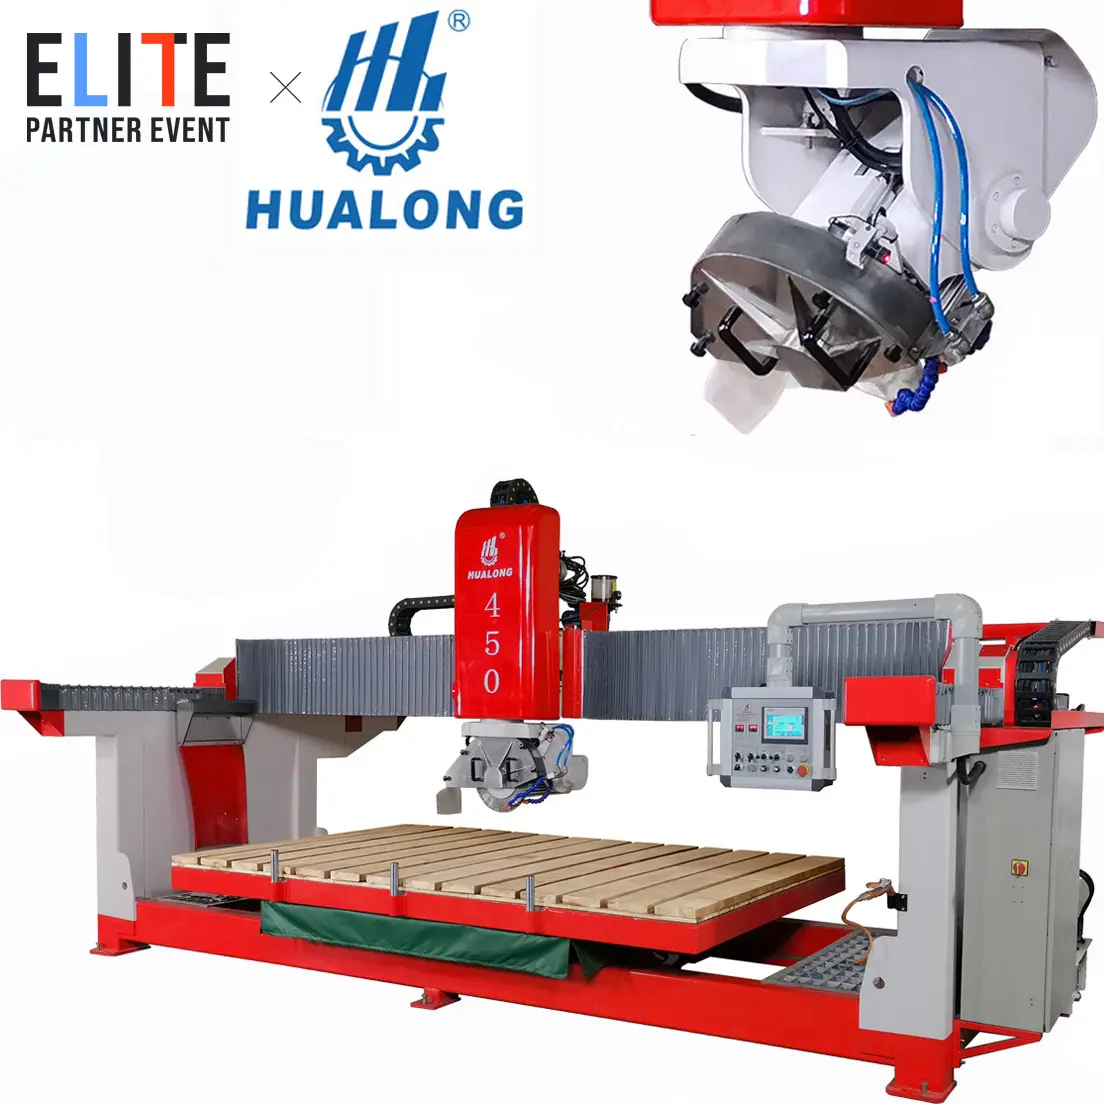 HUALONG оборудование для работы с камнем HLSQ-450 мостового типа автоматическая машина для резки камня циркулярная пила машина для обработки мрамора гранитная надгробная плита